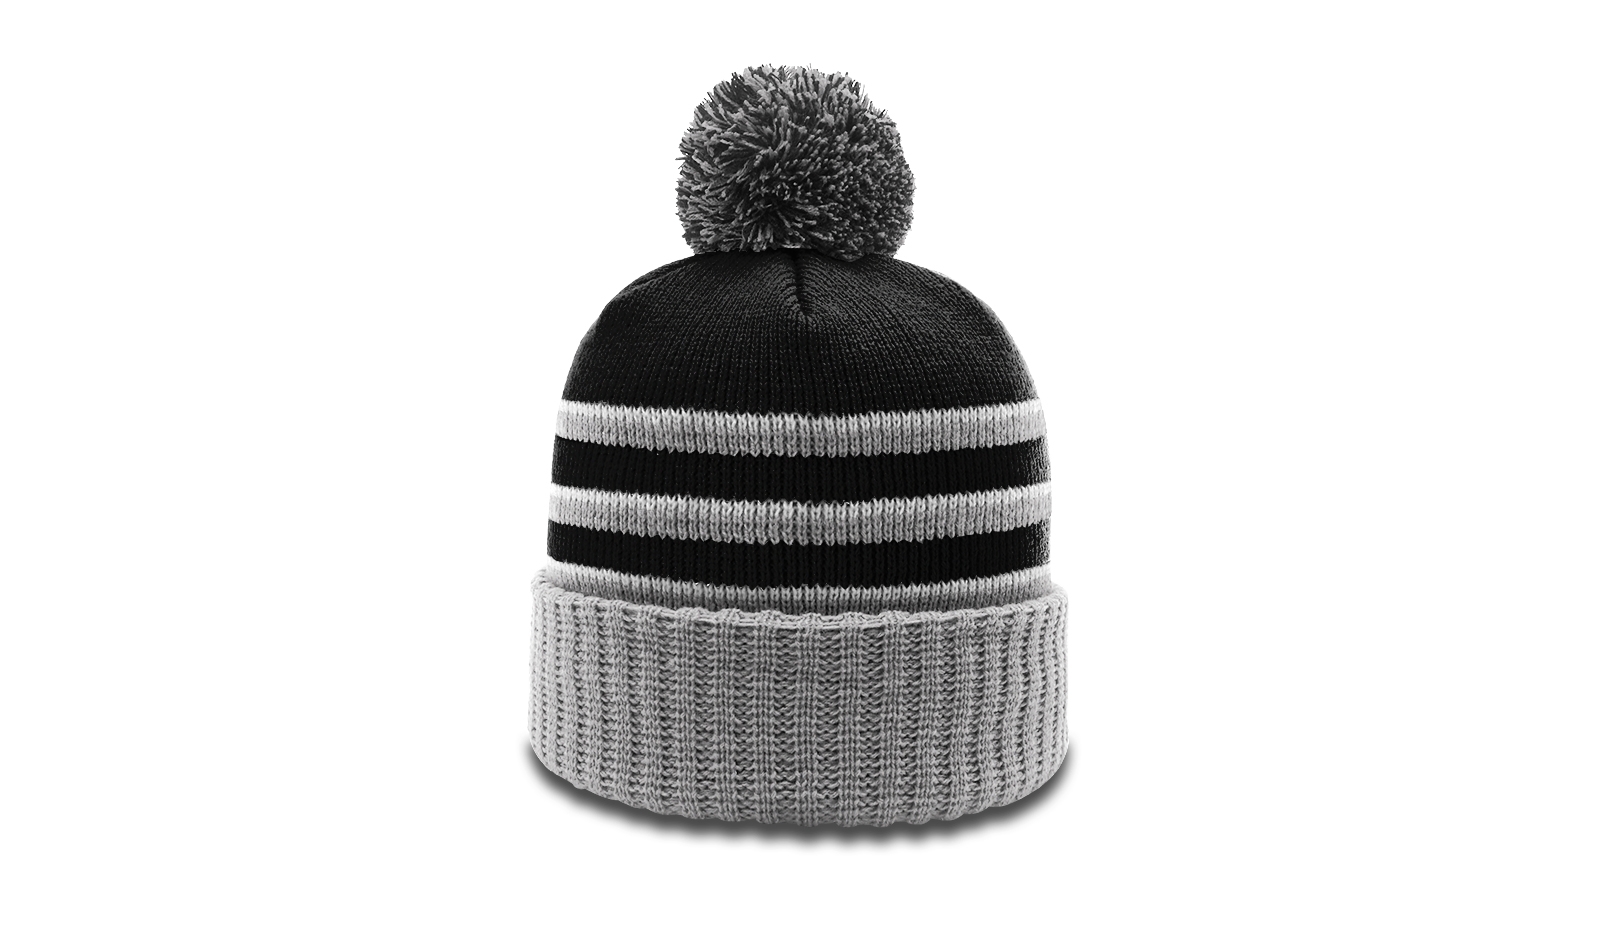 Winter | Cuff Caps Richardson Knit Pom & Striped w/ Beanie